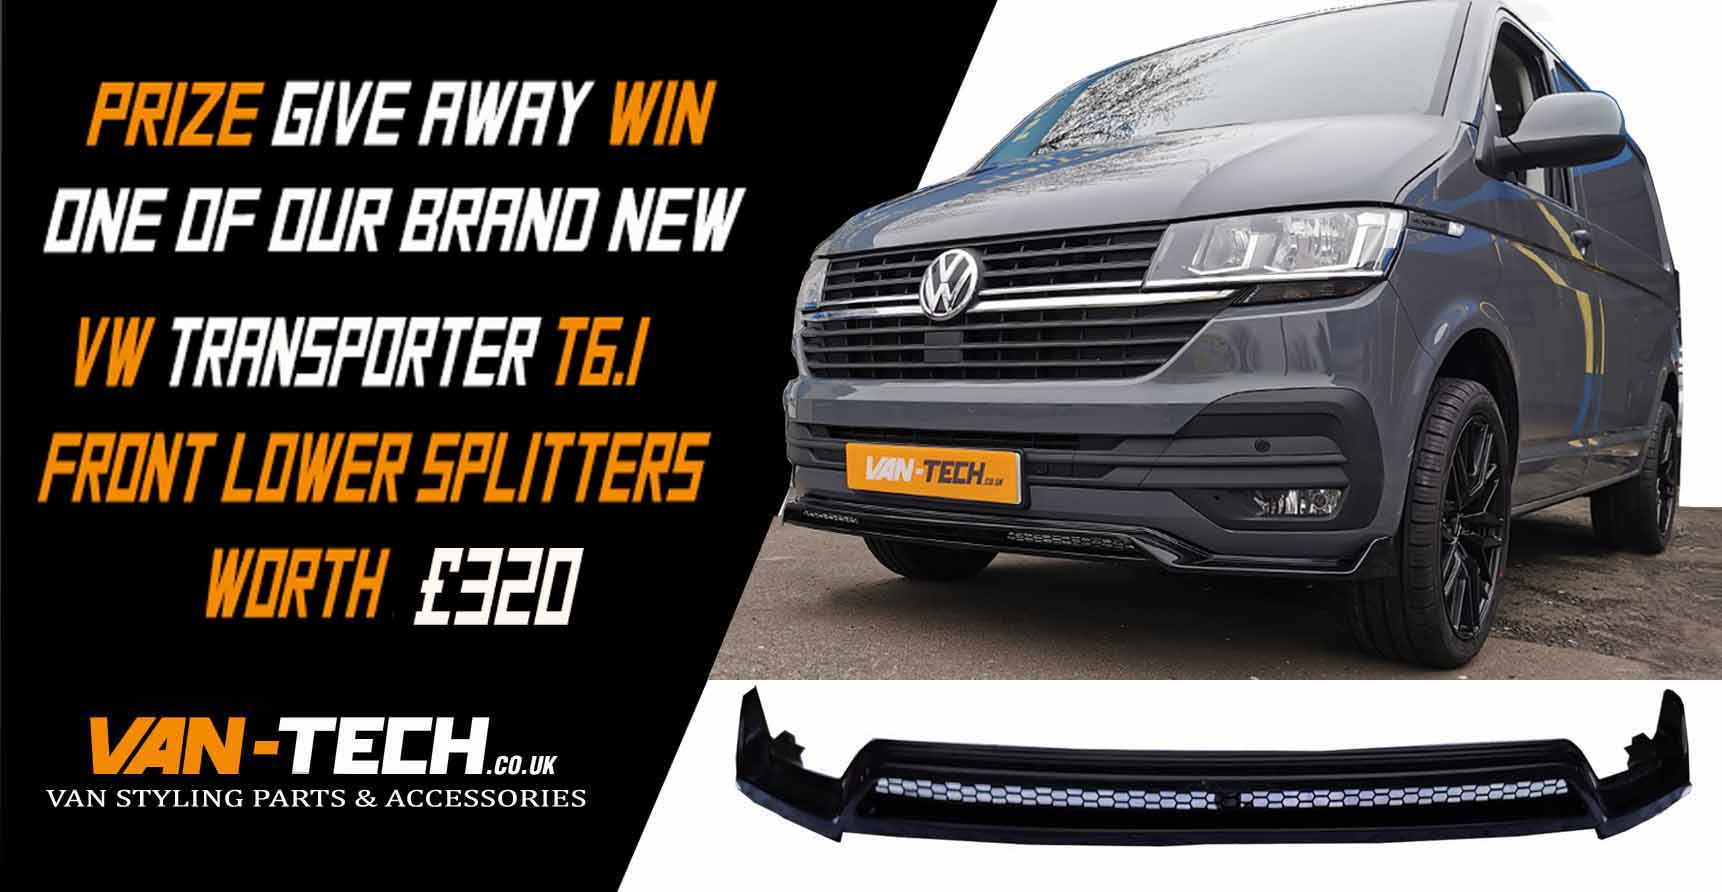 Van-Tech VW Transporter T6.1 Front Lower Splitter Prize Give Away